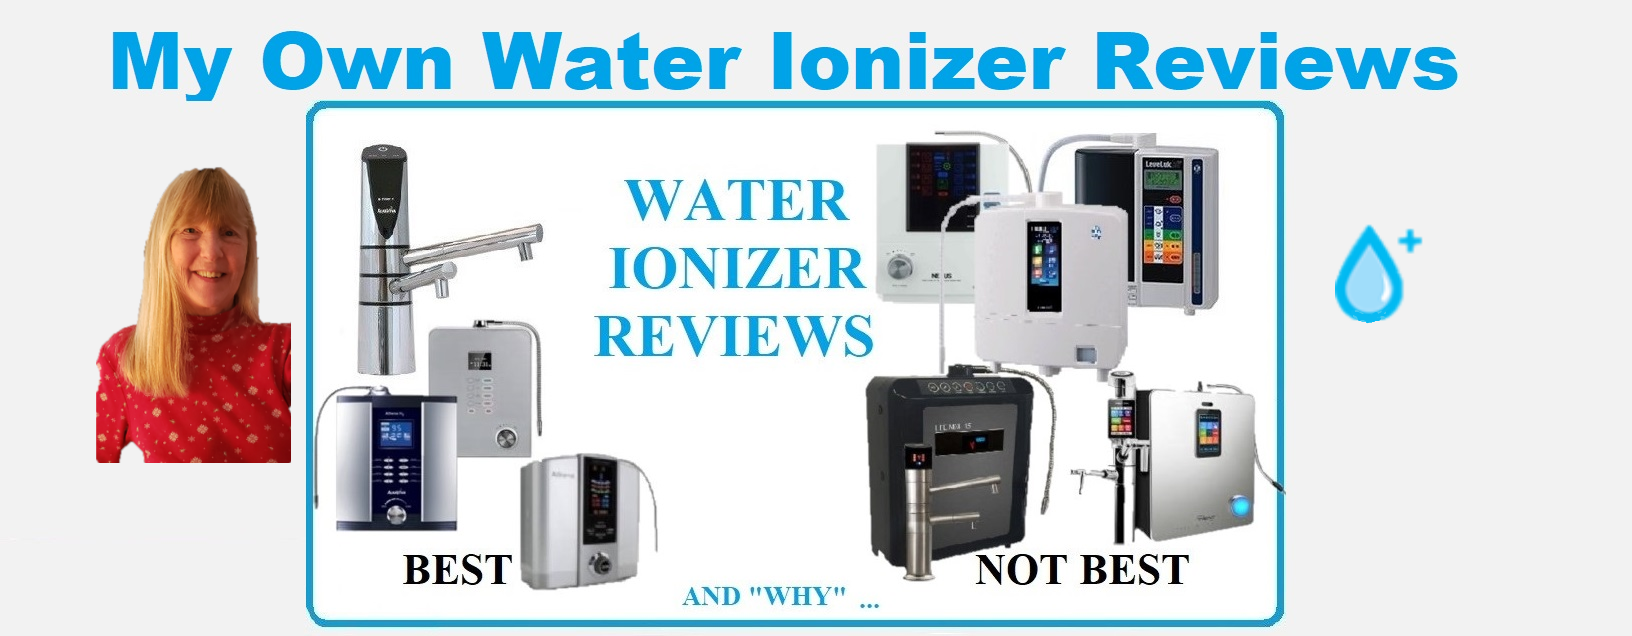 alkaline-water-plus-water-ionizer-reviews.jpg.png